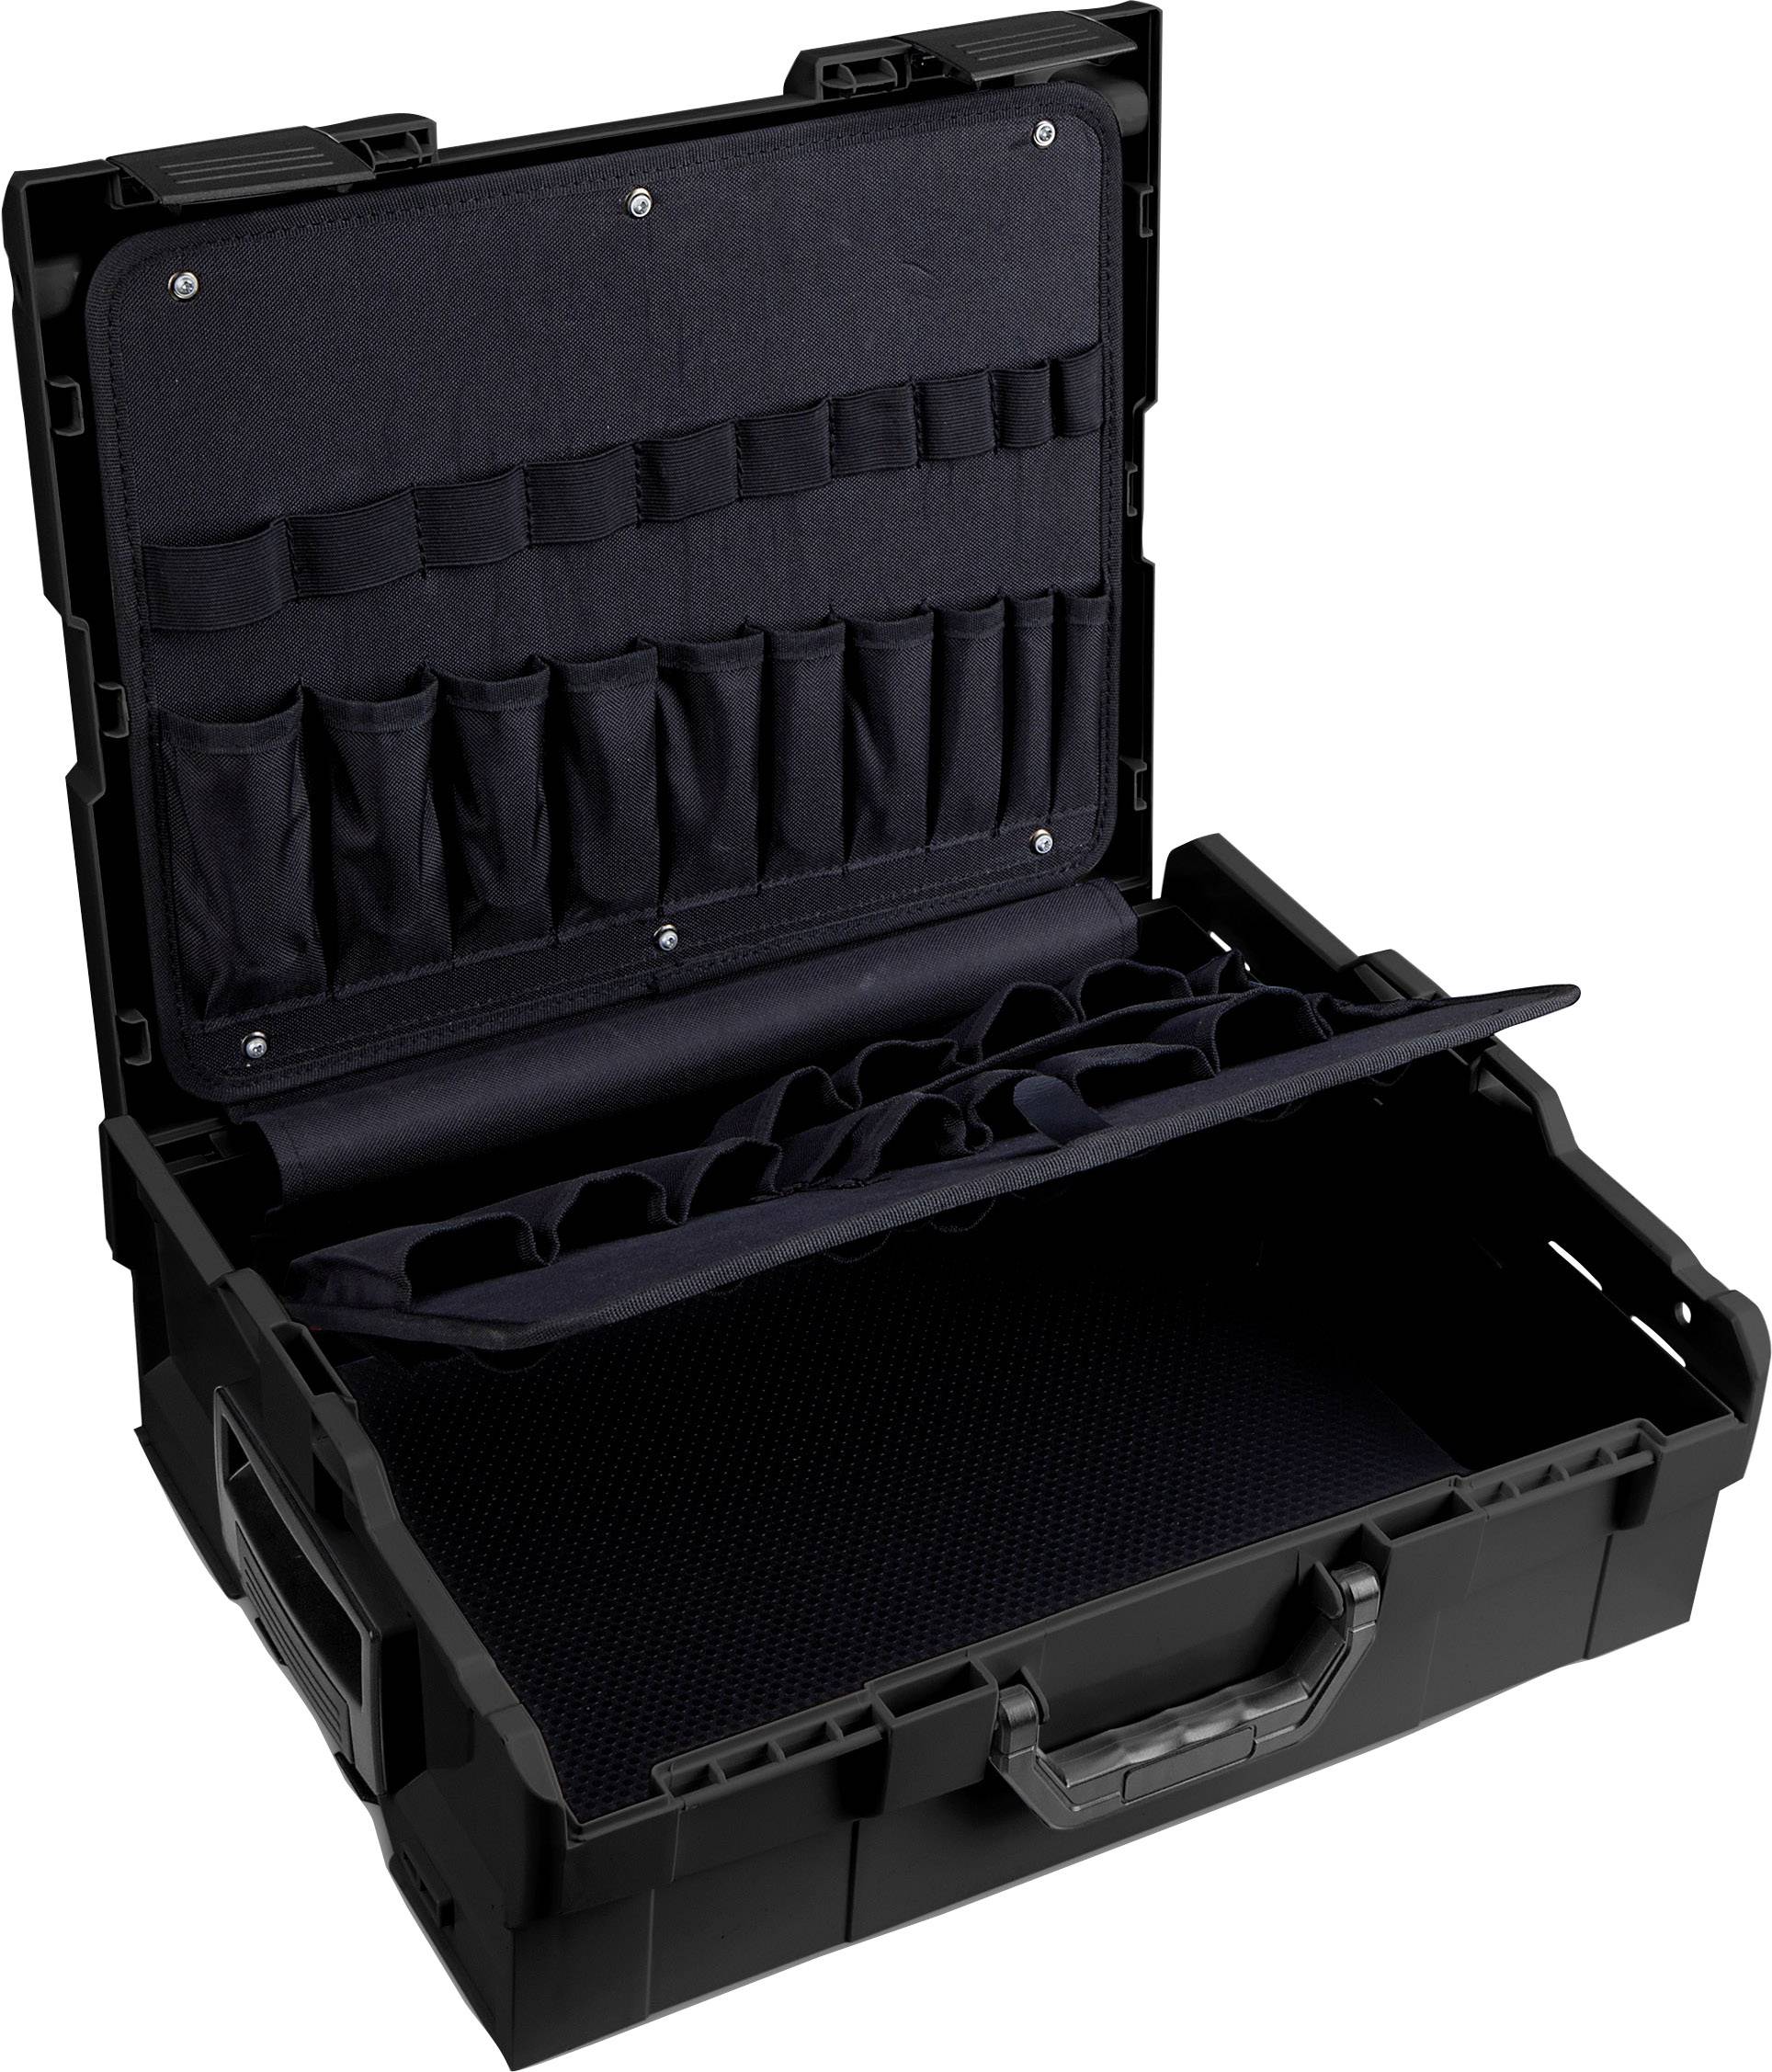 Boîte à outils Industrial L-BOXX Mini 260 x 63 x 156 mm avec